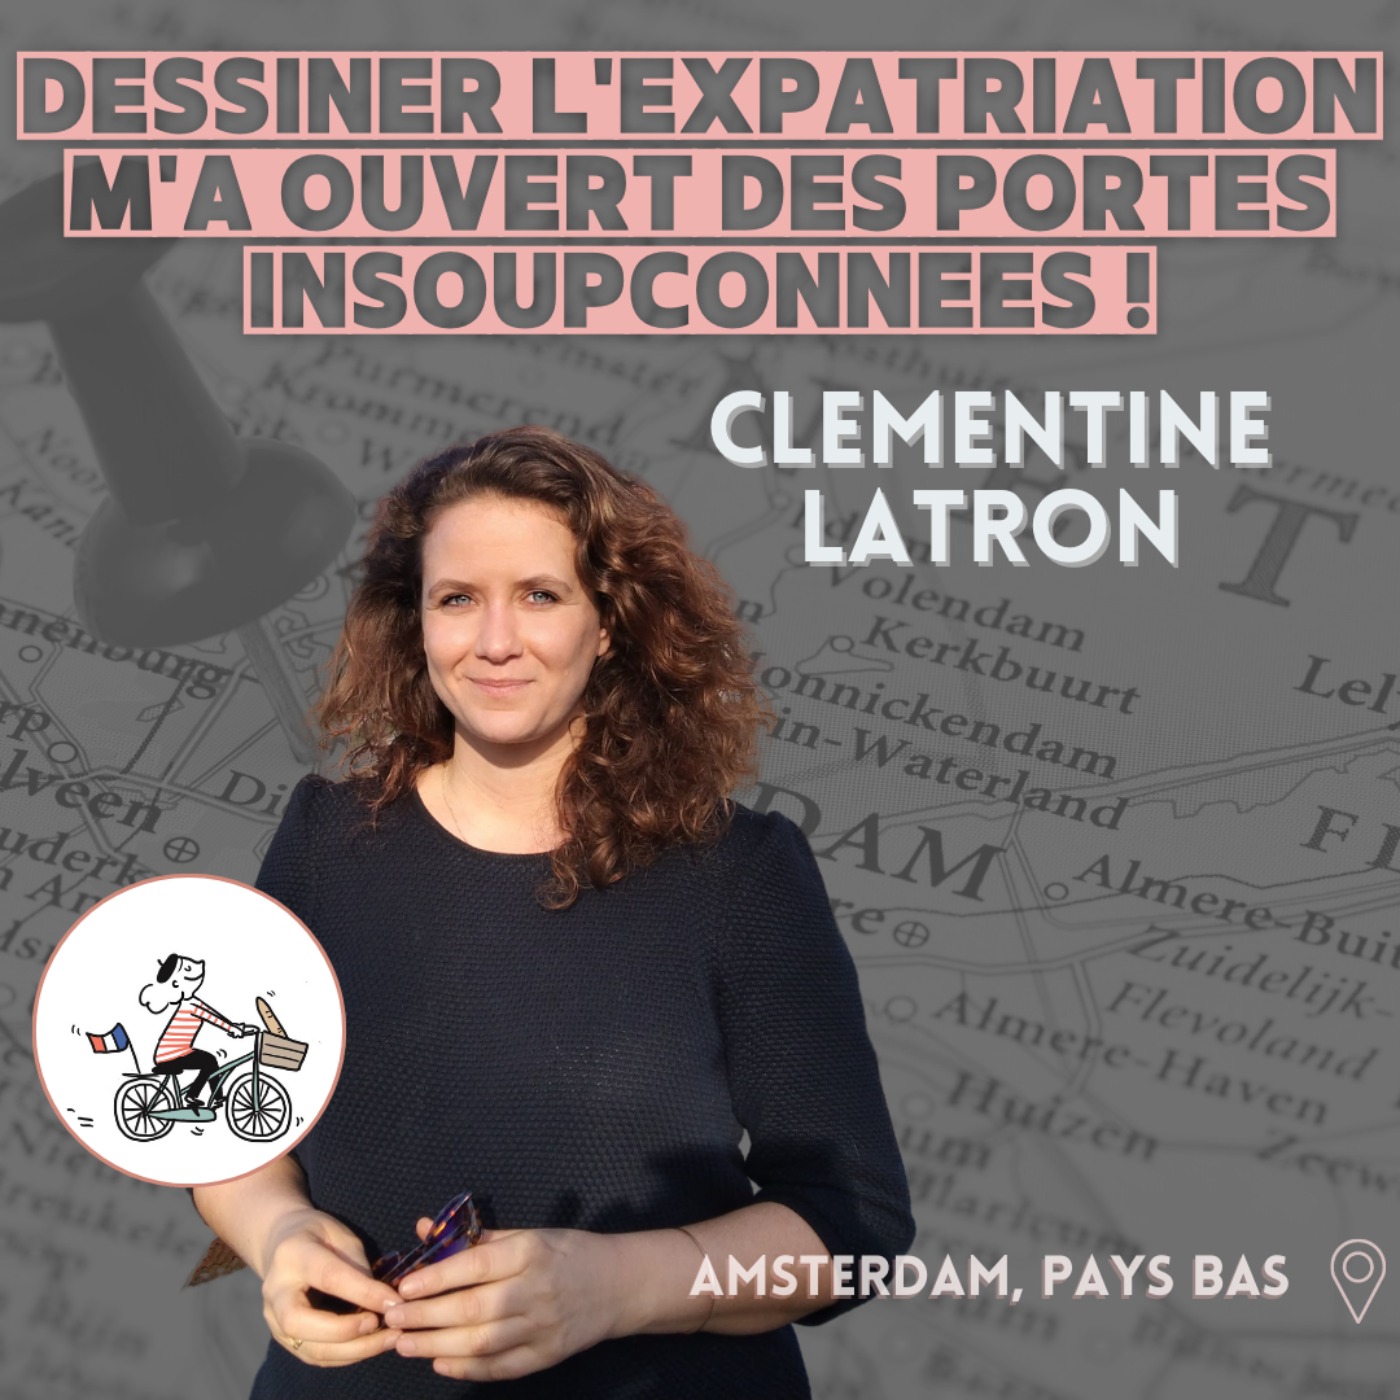 Clémentine Latron (Amsterdam) : ”Dessiner l’expatriation m’a ouvert des portes insoupçonnées !”